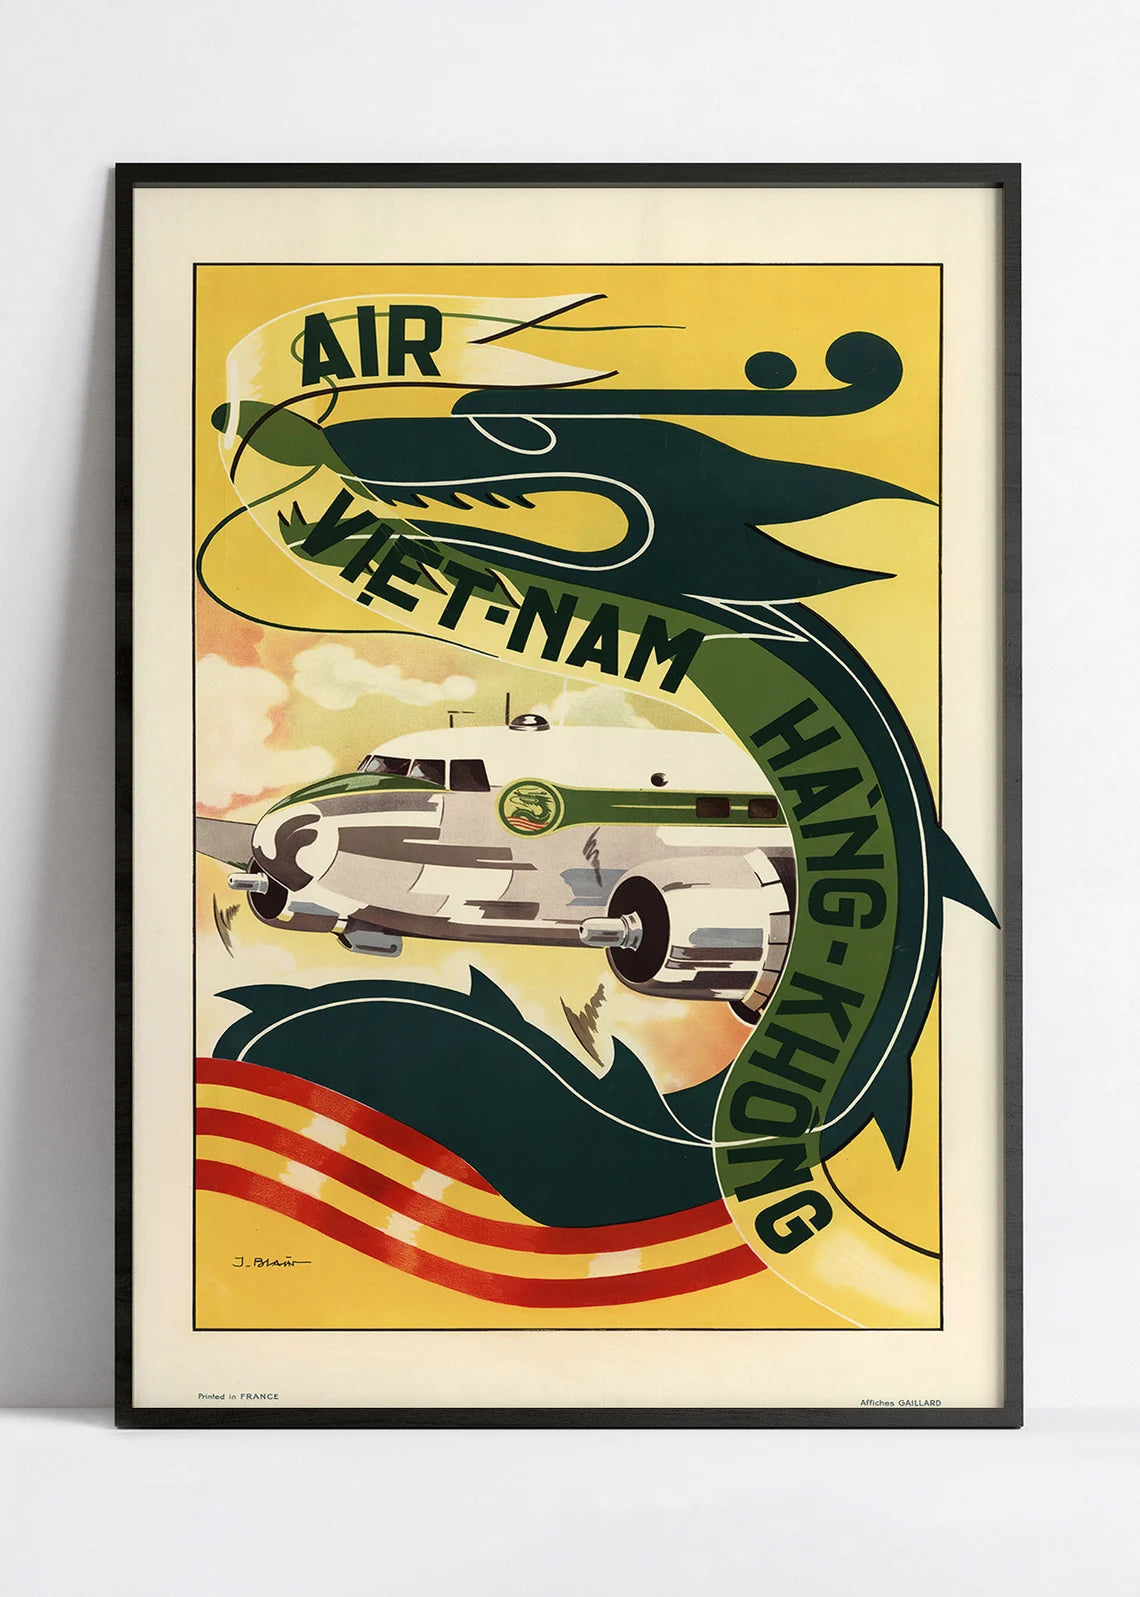 Affiche aviation vintage "Hang Khong" - Air Vietnam  - Haute Définition - papier mat 230gr/m2